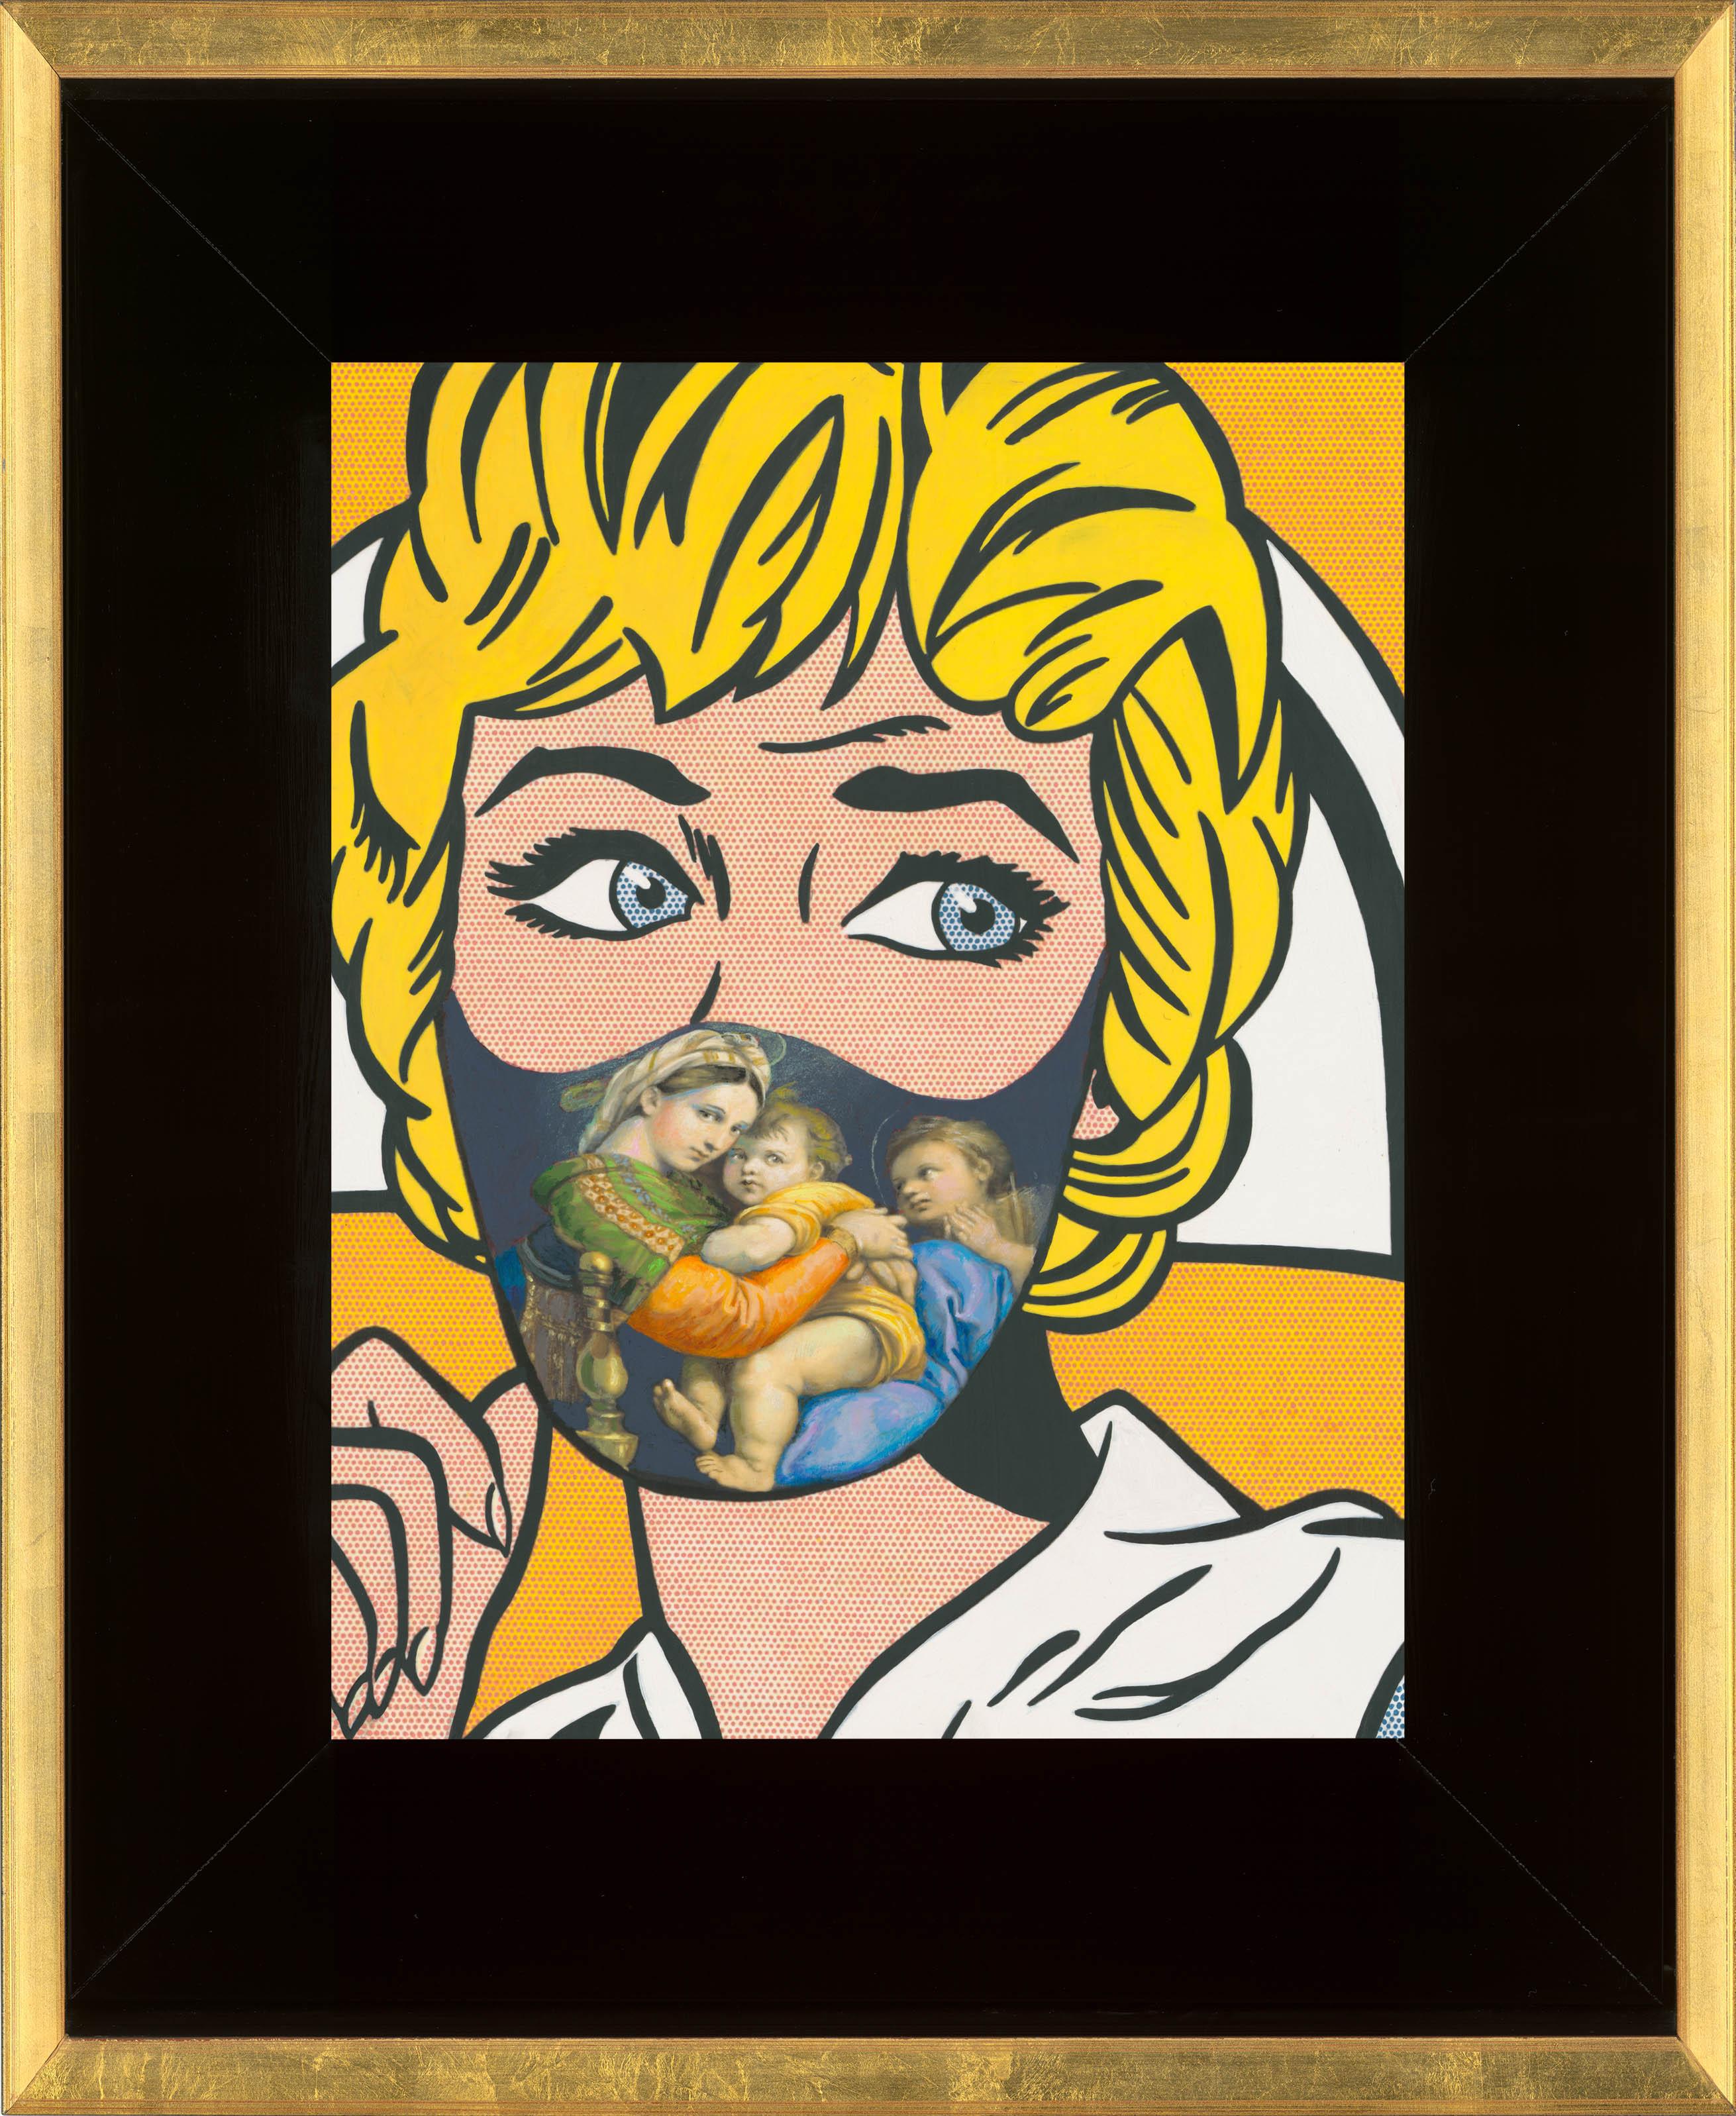 Roy Lichtenstein “Nurse” masked with Raphael’s “Madonna della Seggiola” & Unmask - Painting by Clement Kamena